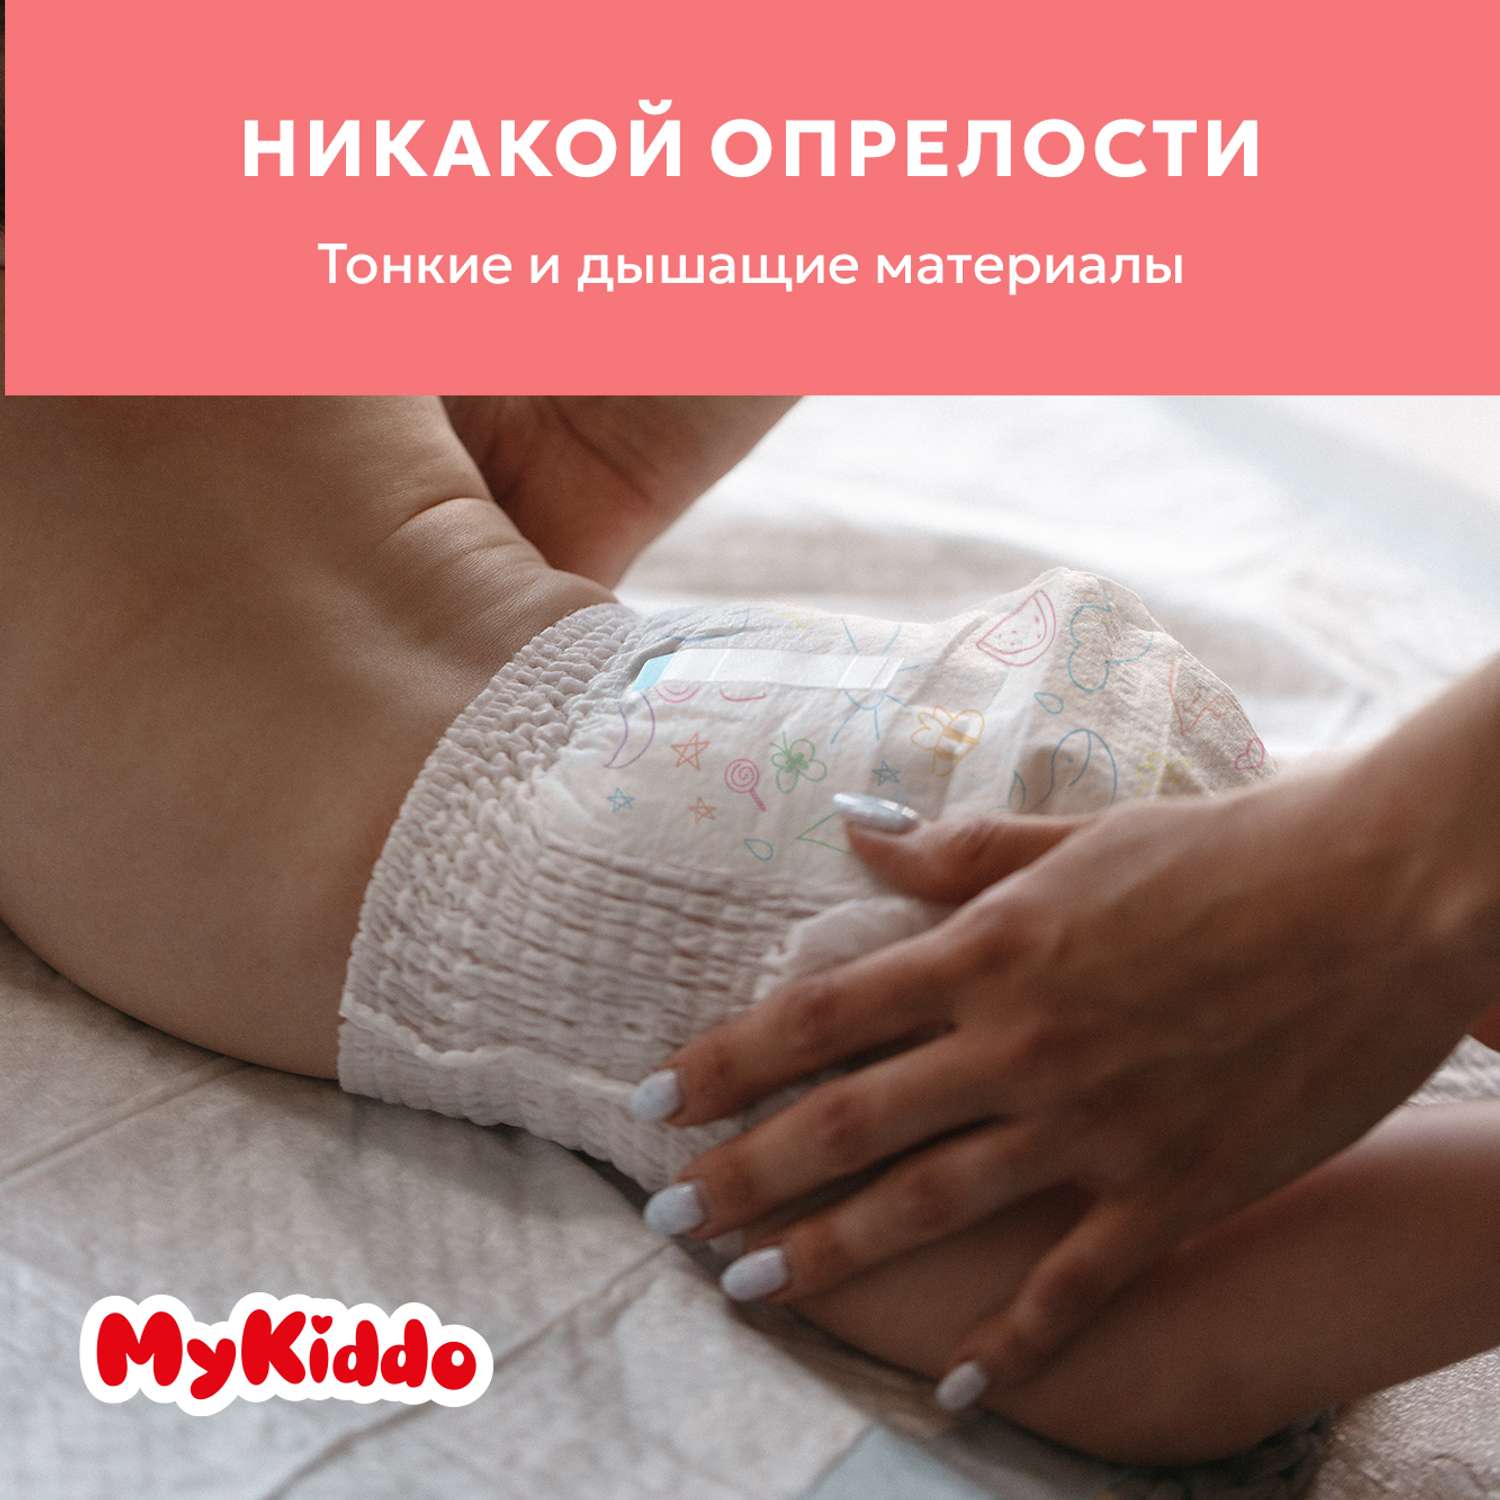 Подгузники MyKiddo Premium для новорожденных 0-6 кг размер S 3уп по 24 шт - фото 5